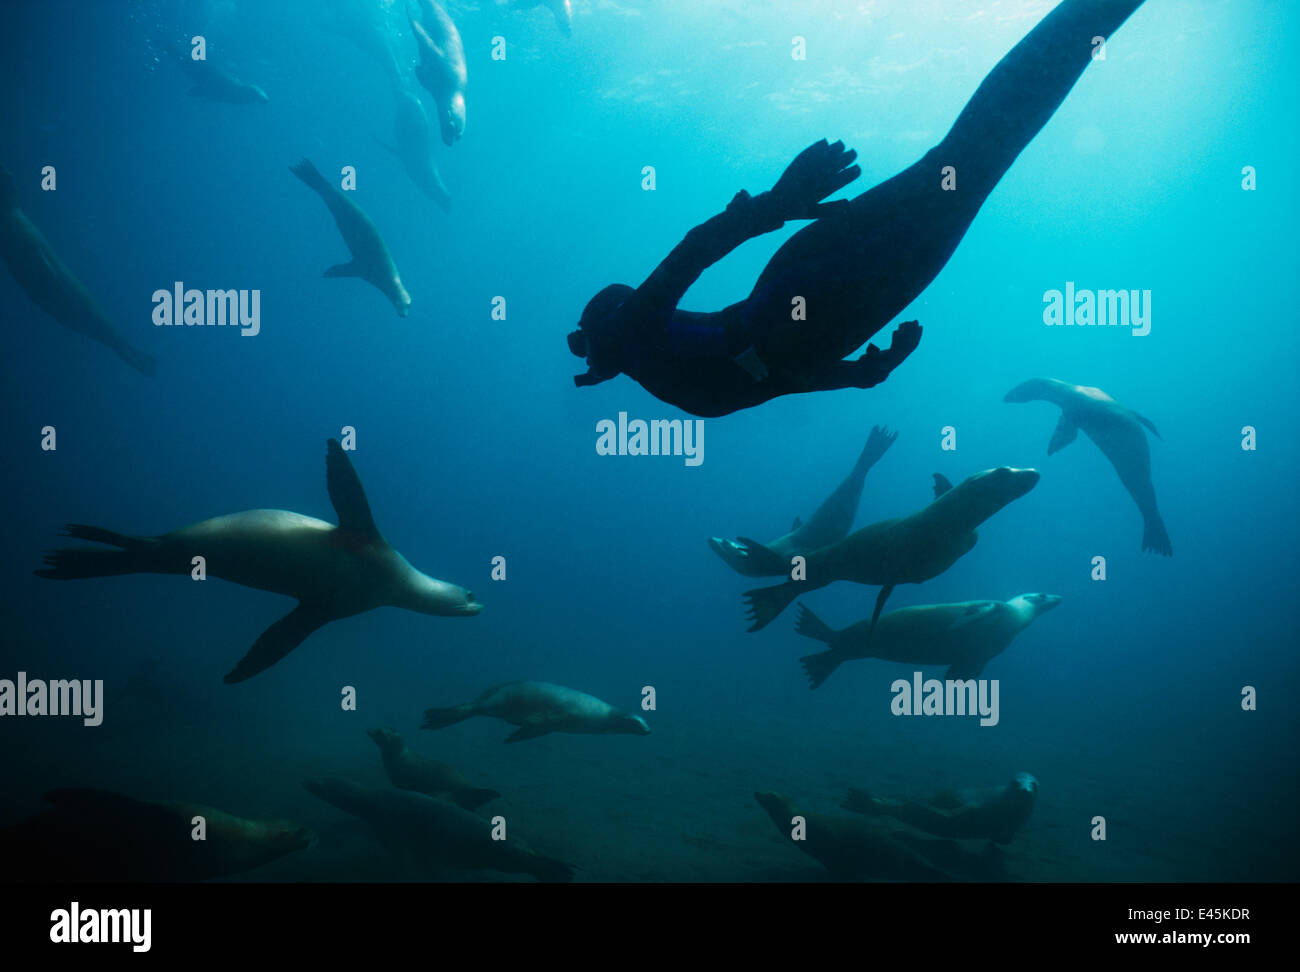 Freitaucher Schwimmen unter kalifornischen Seelöwen (Zalophus Californianus) Anacapa Island, Kalifornien, Pacific Ocean Modell veröffentlicht Stockfoto